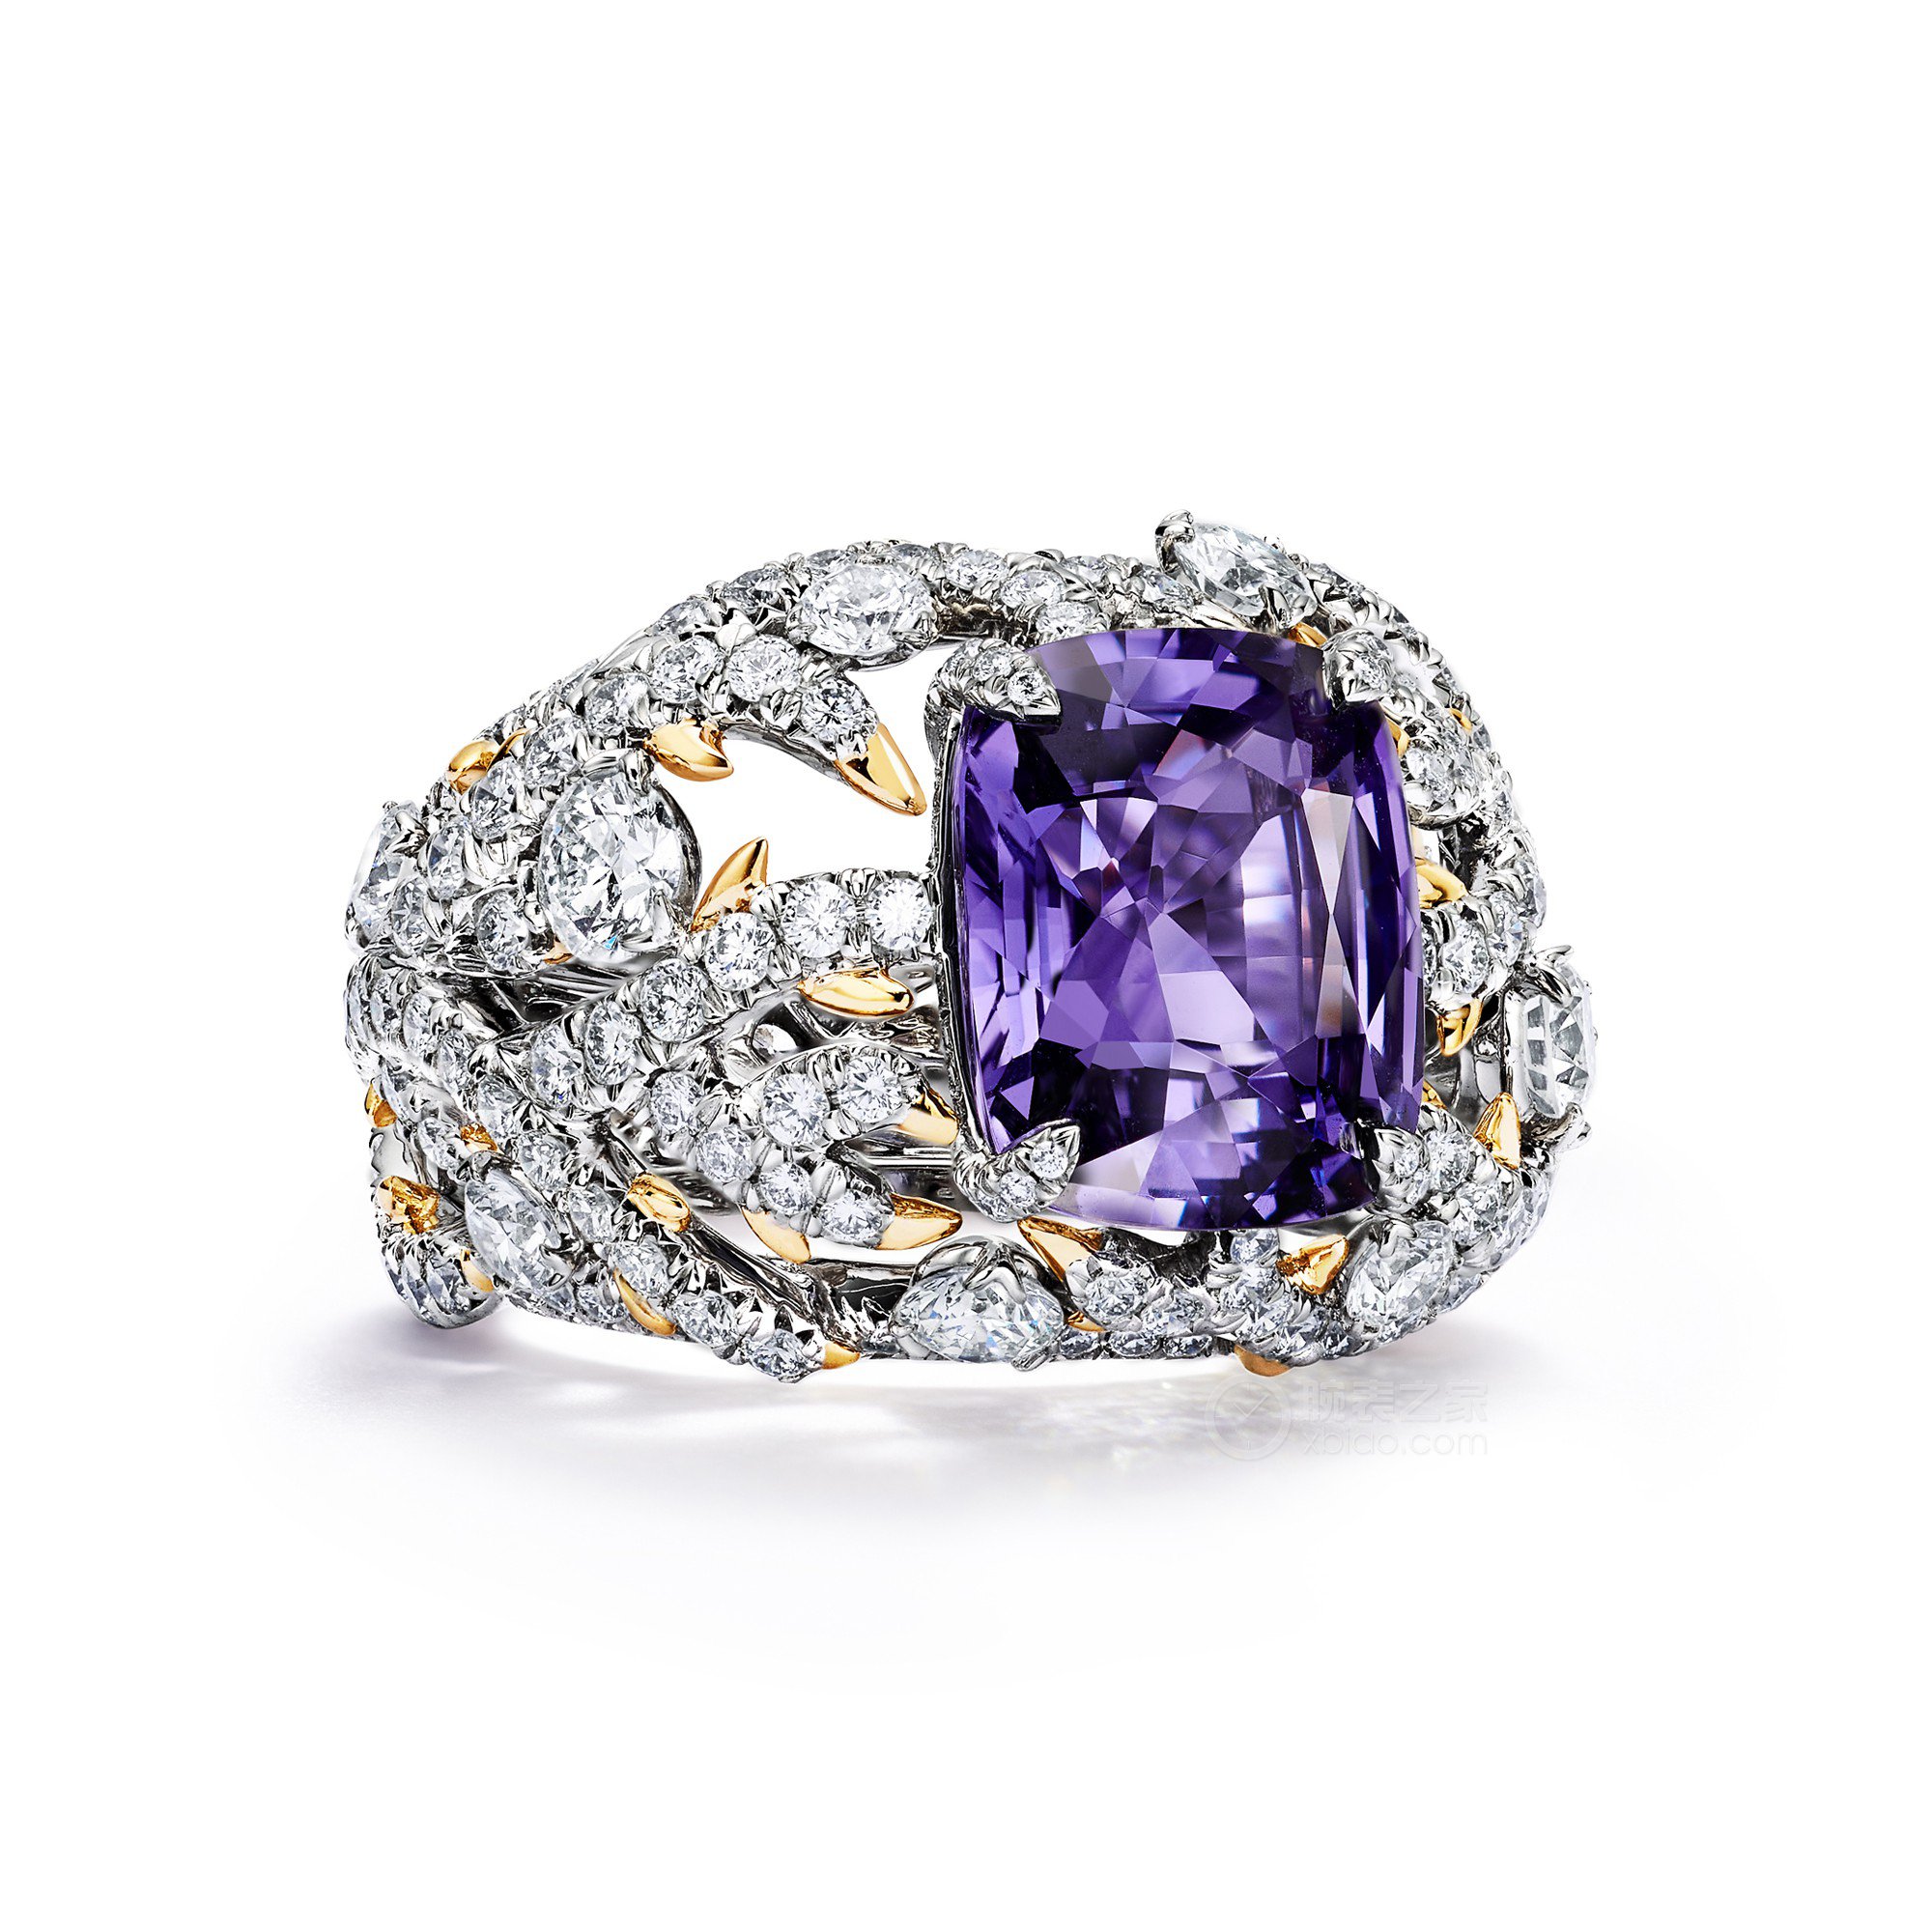 蒂芙尼BLUE BOOK高级珠宝铂金及18K黄金镶嵌一颗重逾6克拉的未经优化处理紫色蓝宝石及钻石戒指戒指